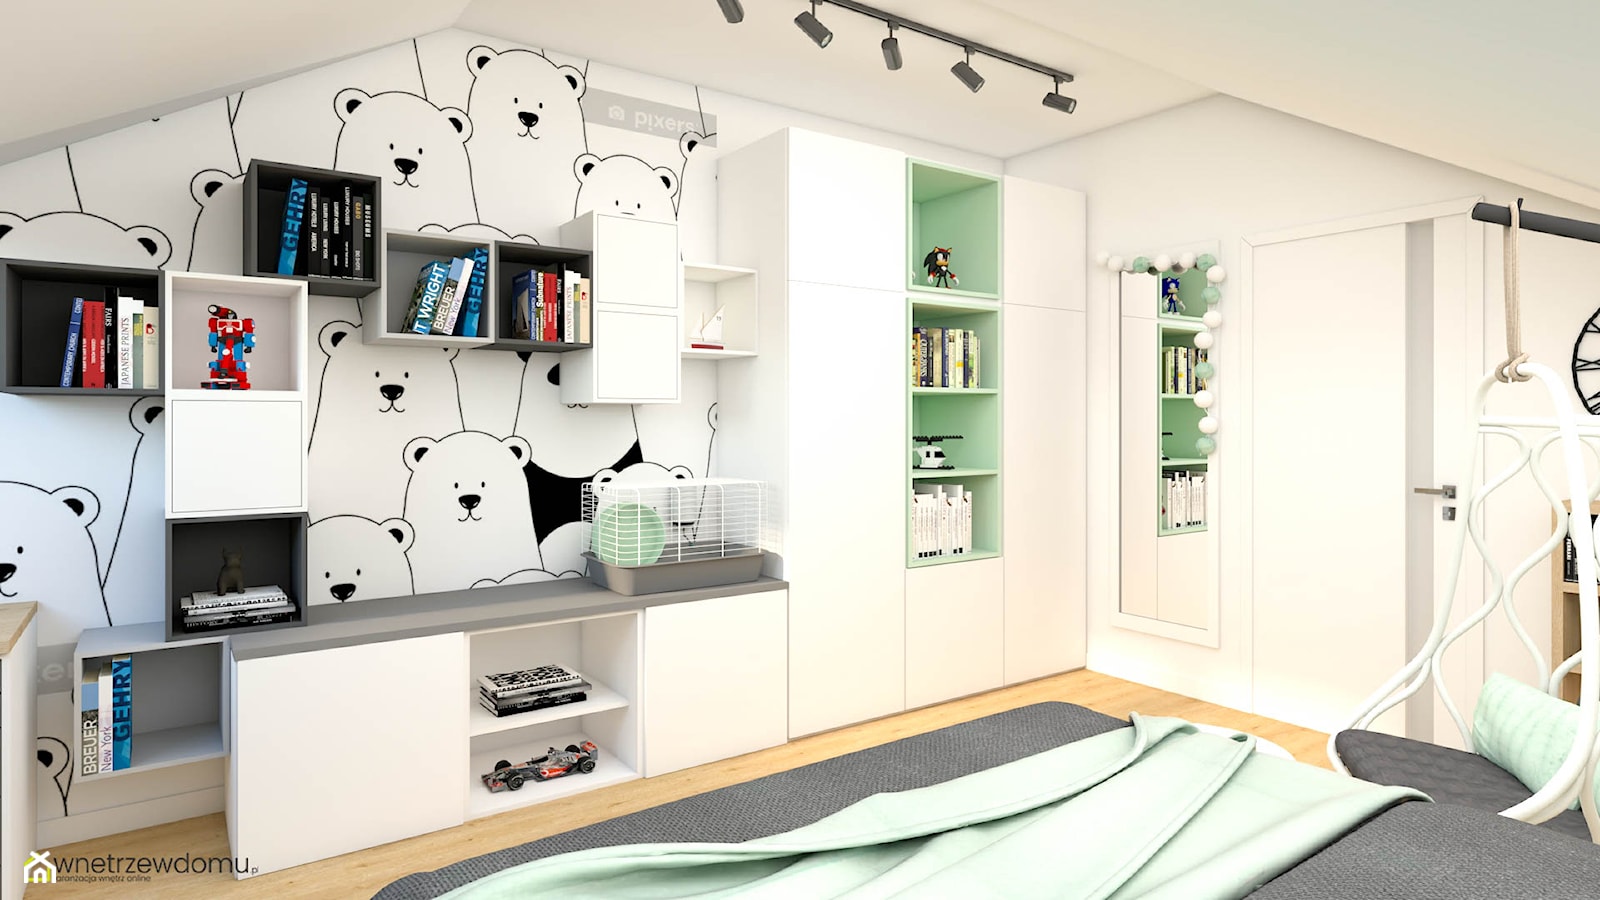 Pokój dla miłośniczki pand - zdjęcie od wnetrzewdomu - Homebook